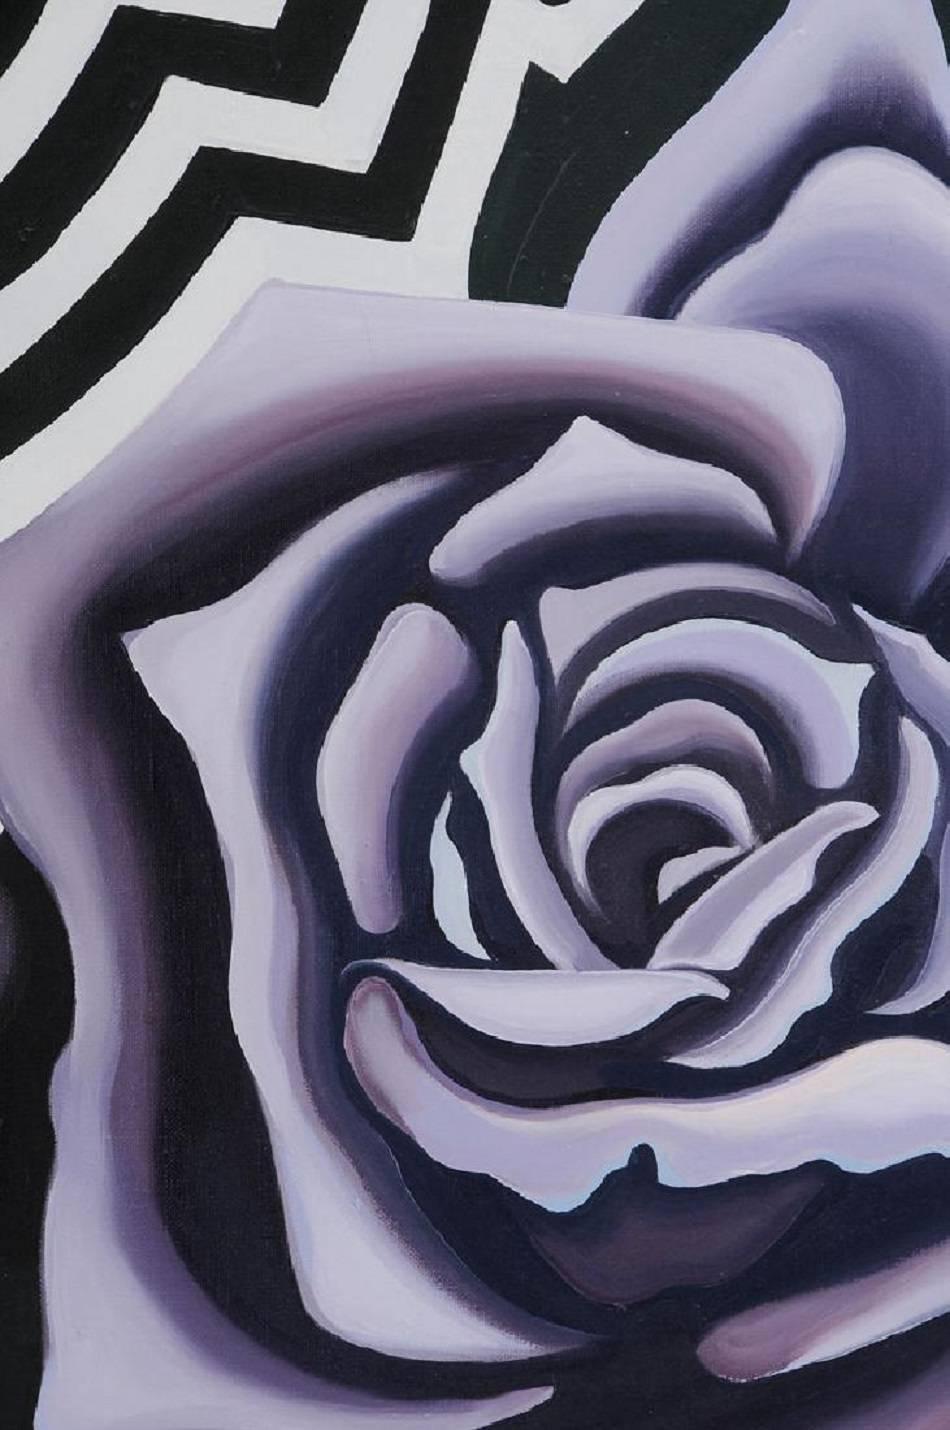 Deux roses violettes, Op Art, peinture à l'huile sur toile, 1974 - Painting de Lowell Nesbitt